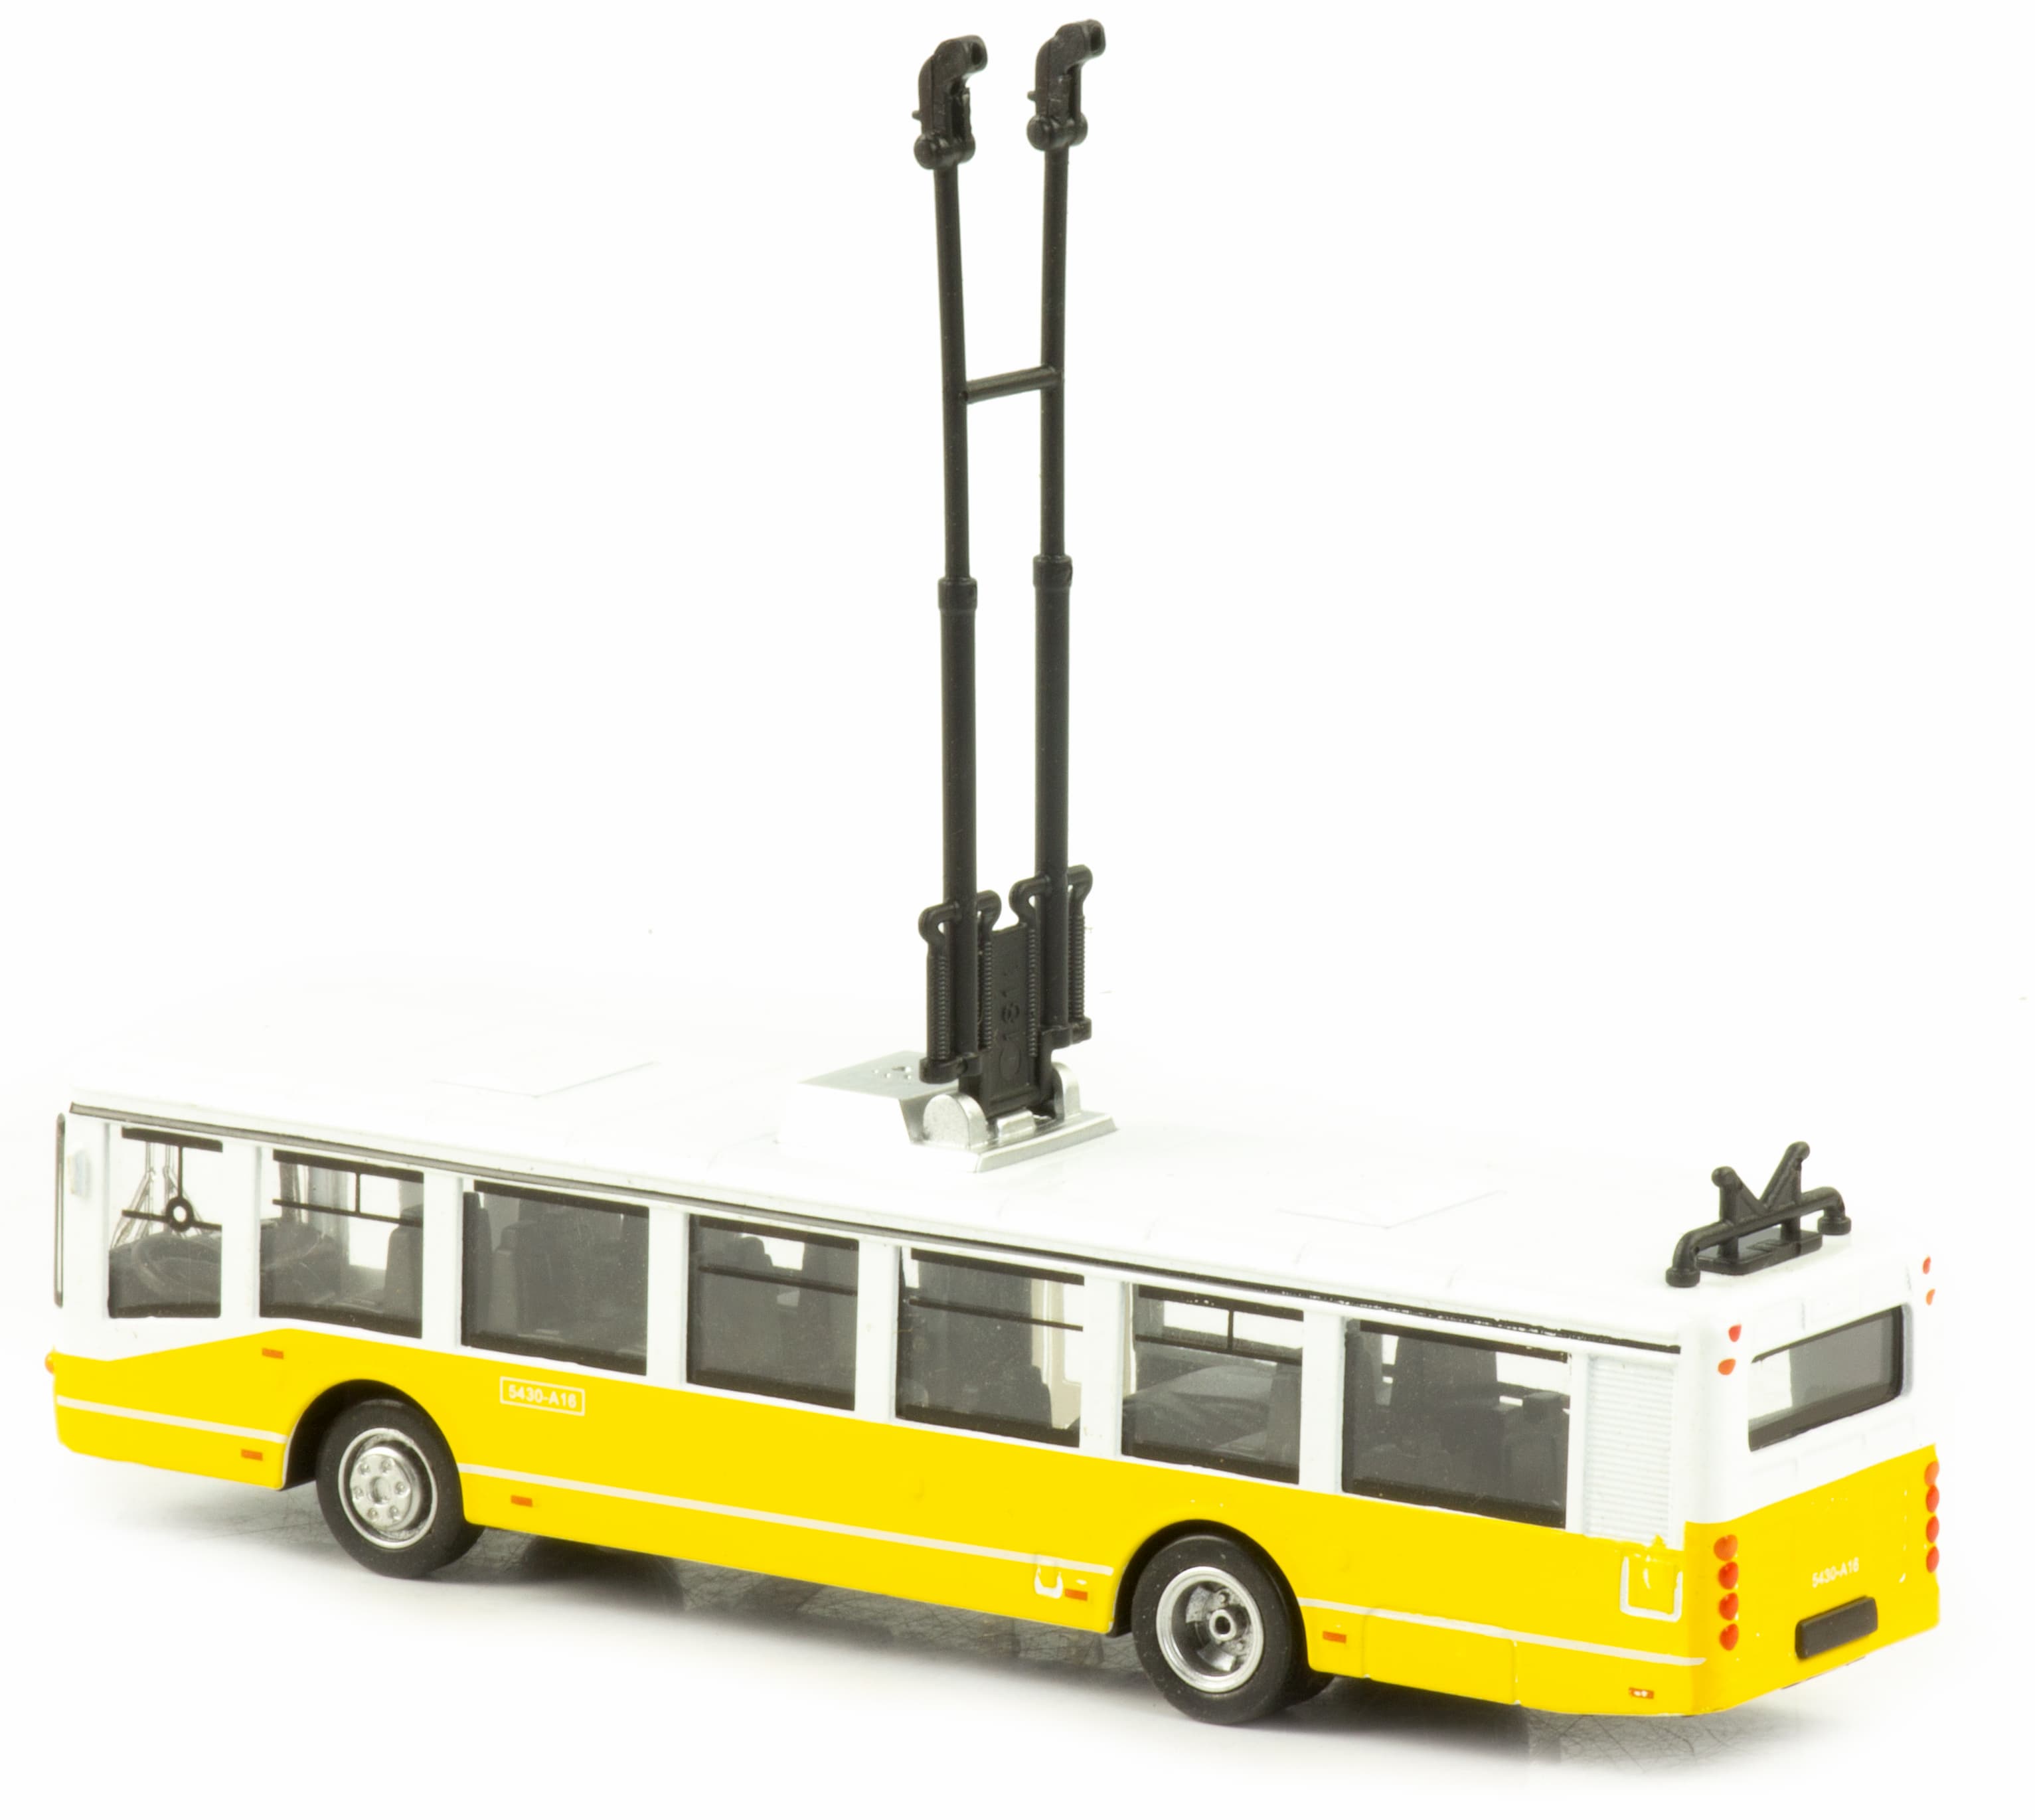 Металлический троллейбус 1:32 «ЛиАЗ 5430-А16» 17 см. 1811-12D инерционный, свет, звук / Микс